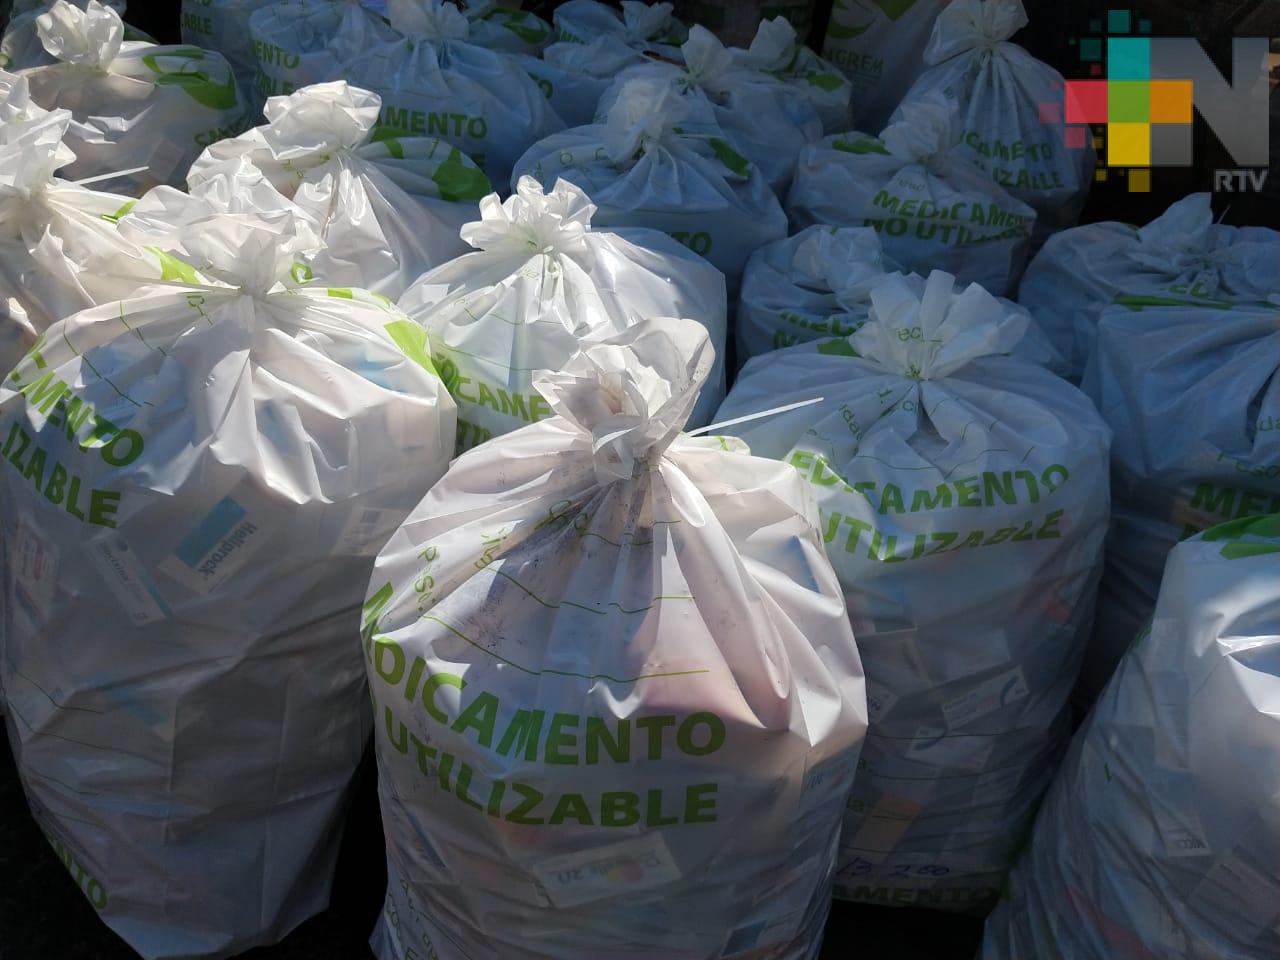 Este año ha impulsado SEDEMA 5 campañas de acopio de residuos